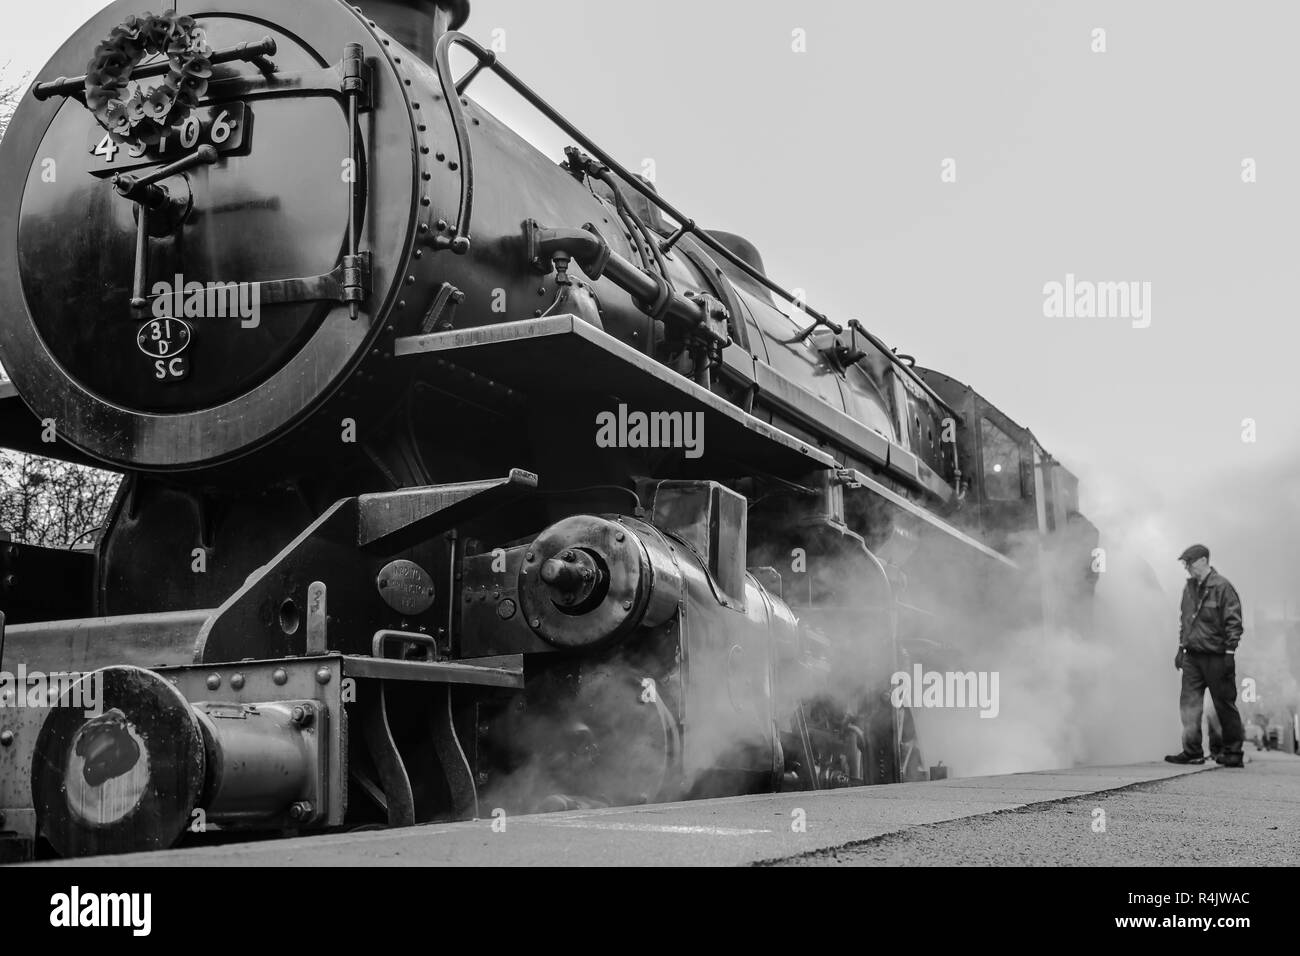 Monoplace, bas angle, gros plan d'une locomotive à vapeur britannique d'époque avec trainspotter, fervent sur plate-forme, Severn Valley Heritage Railway. Banque D'Images